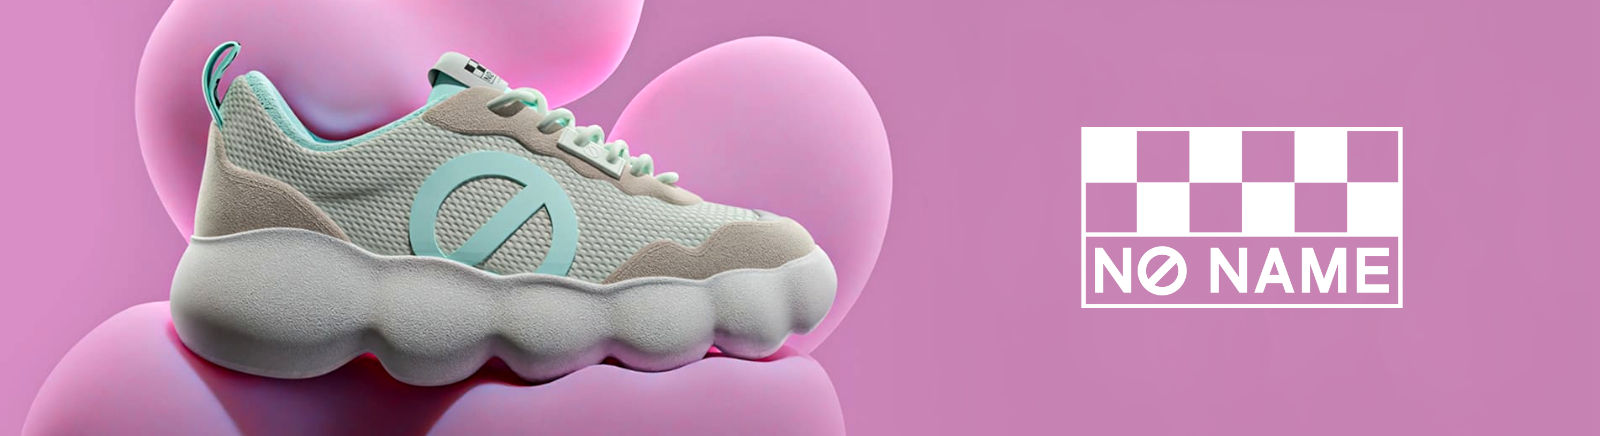 No Name Damenschuhe online kaufen im Prange Schuhe Shop